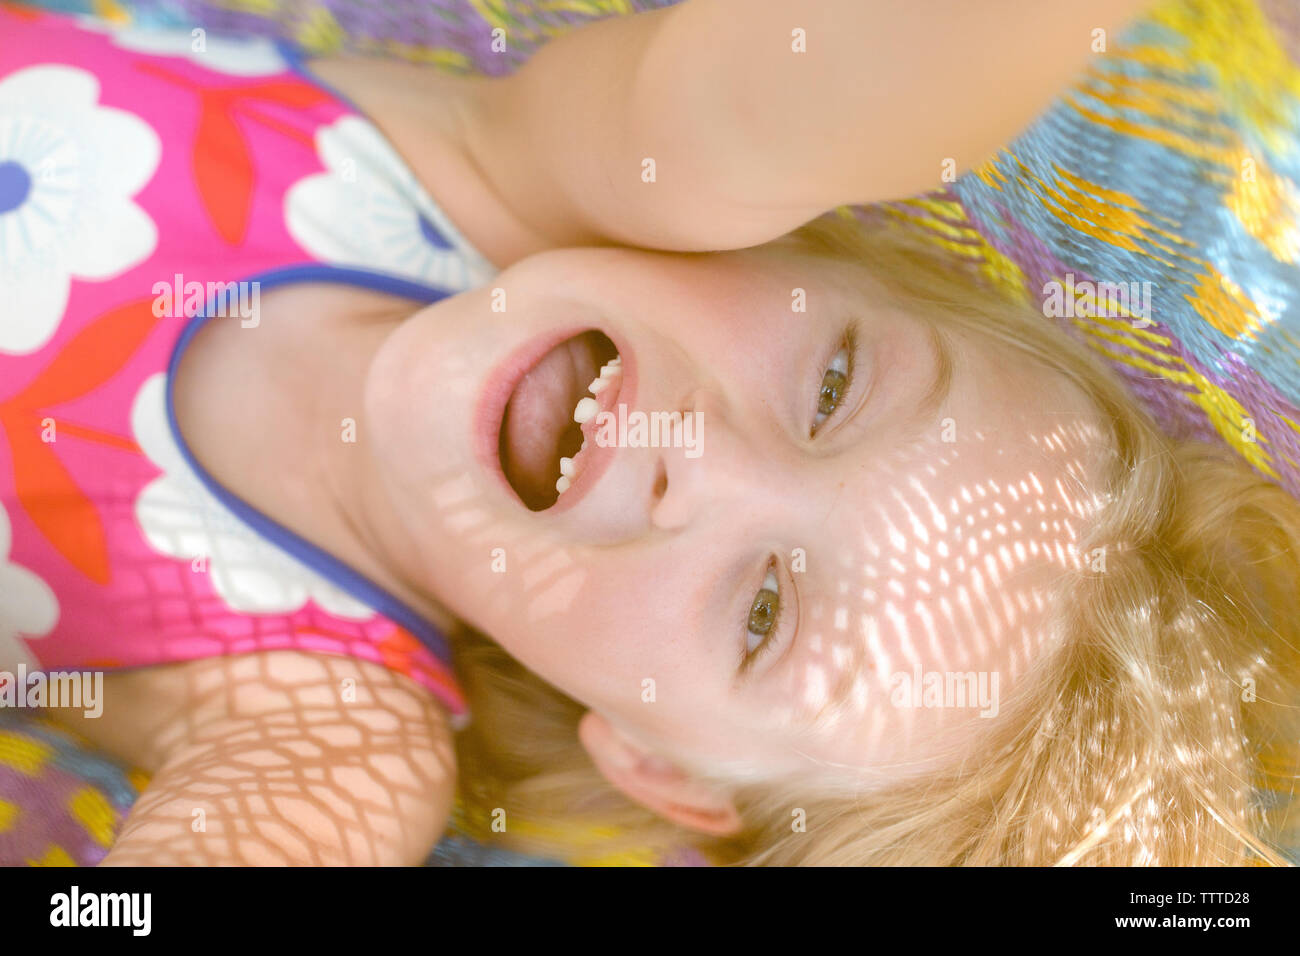 Mädchen mit fehlenden vorderen Zähne in einem farbenfrohen Hängematte Stockfoto